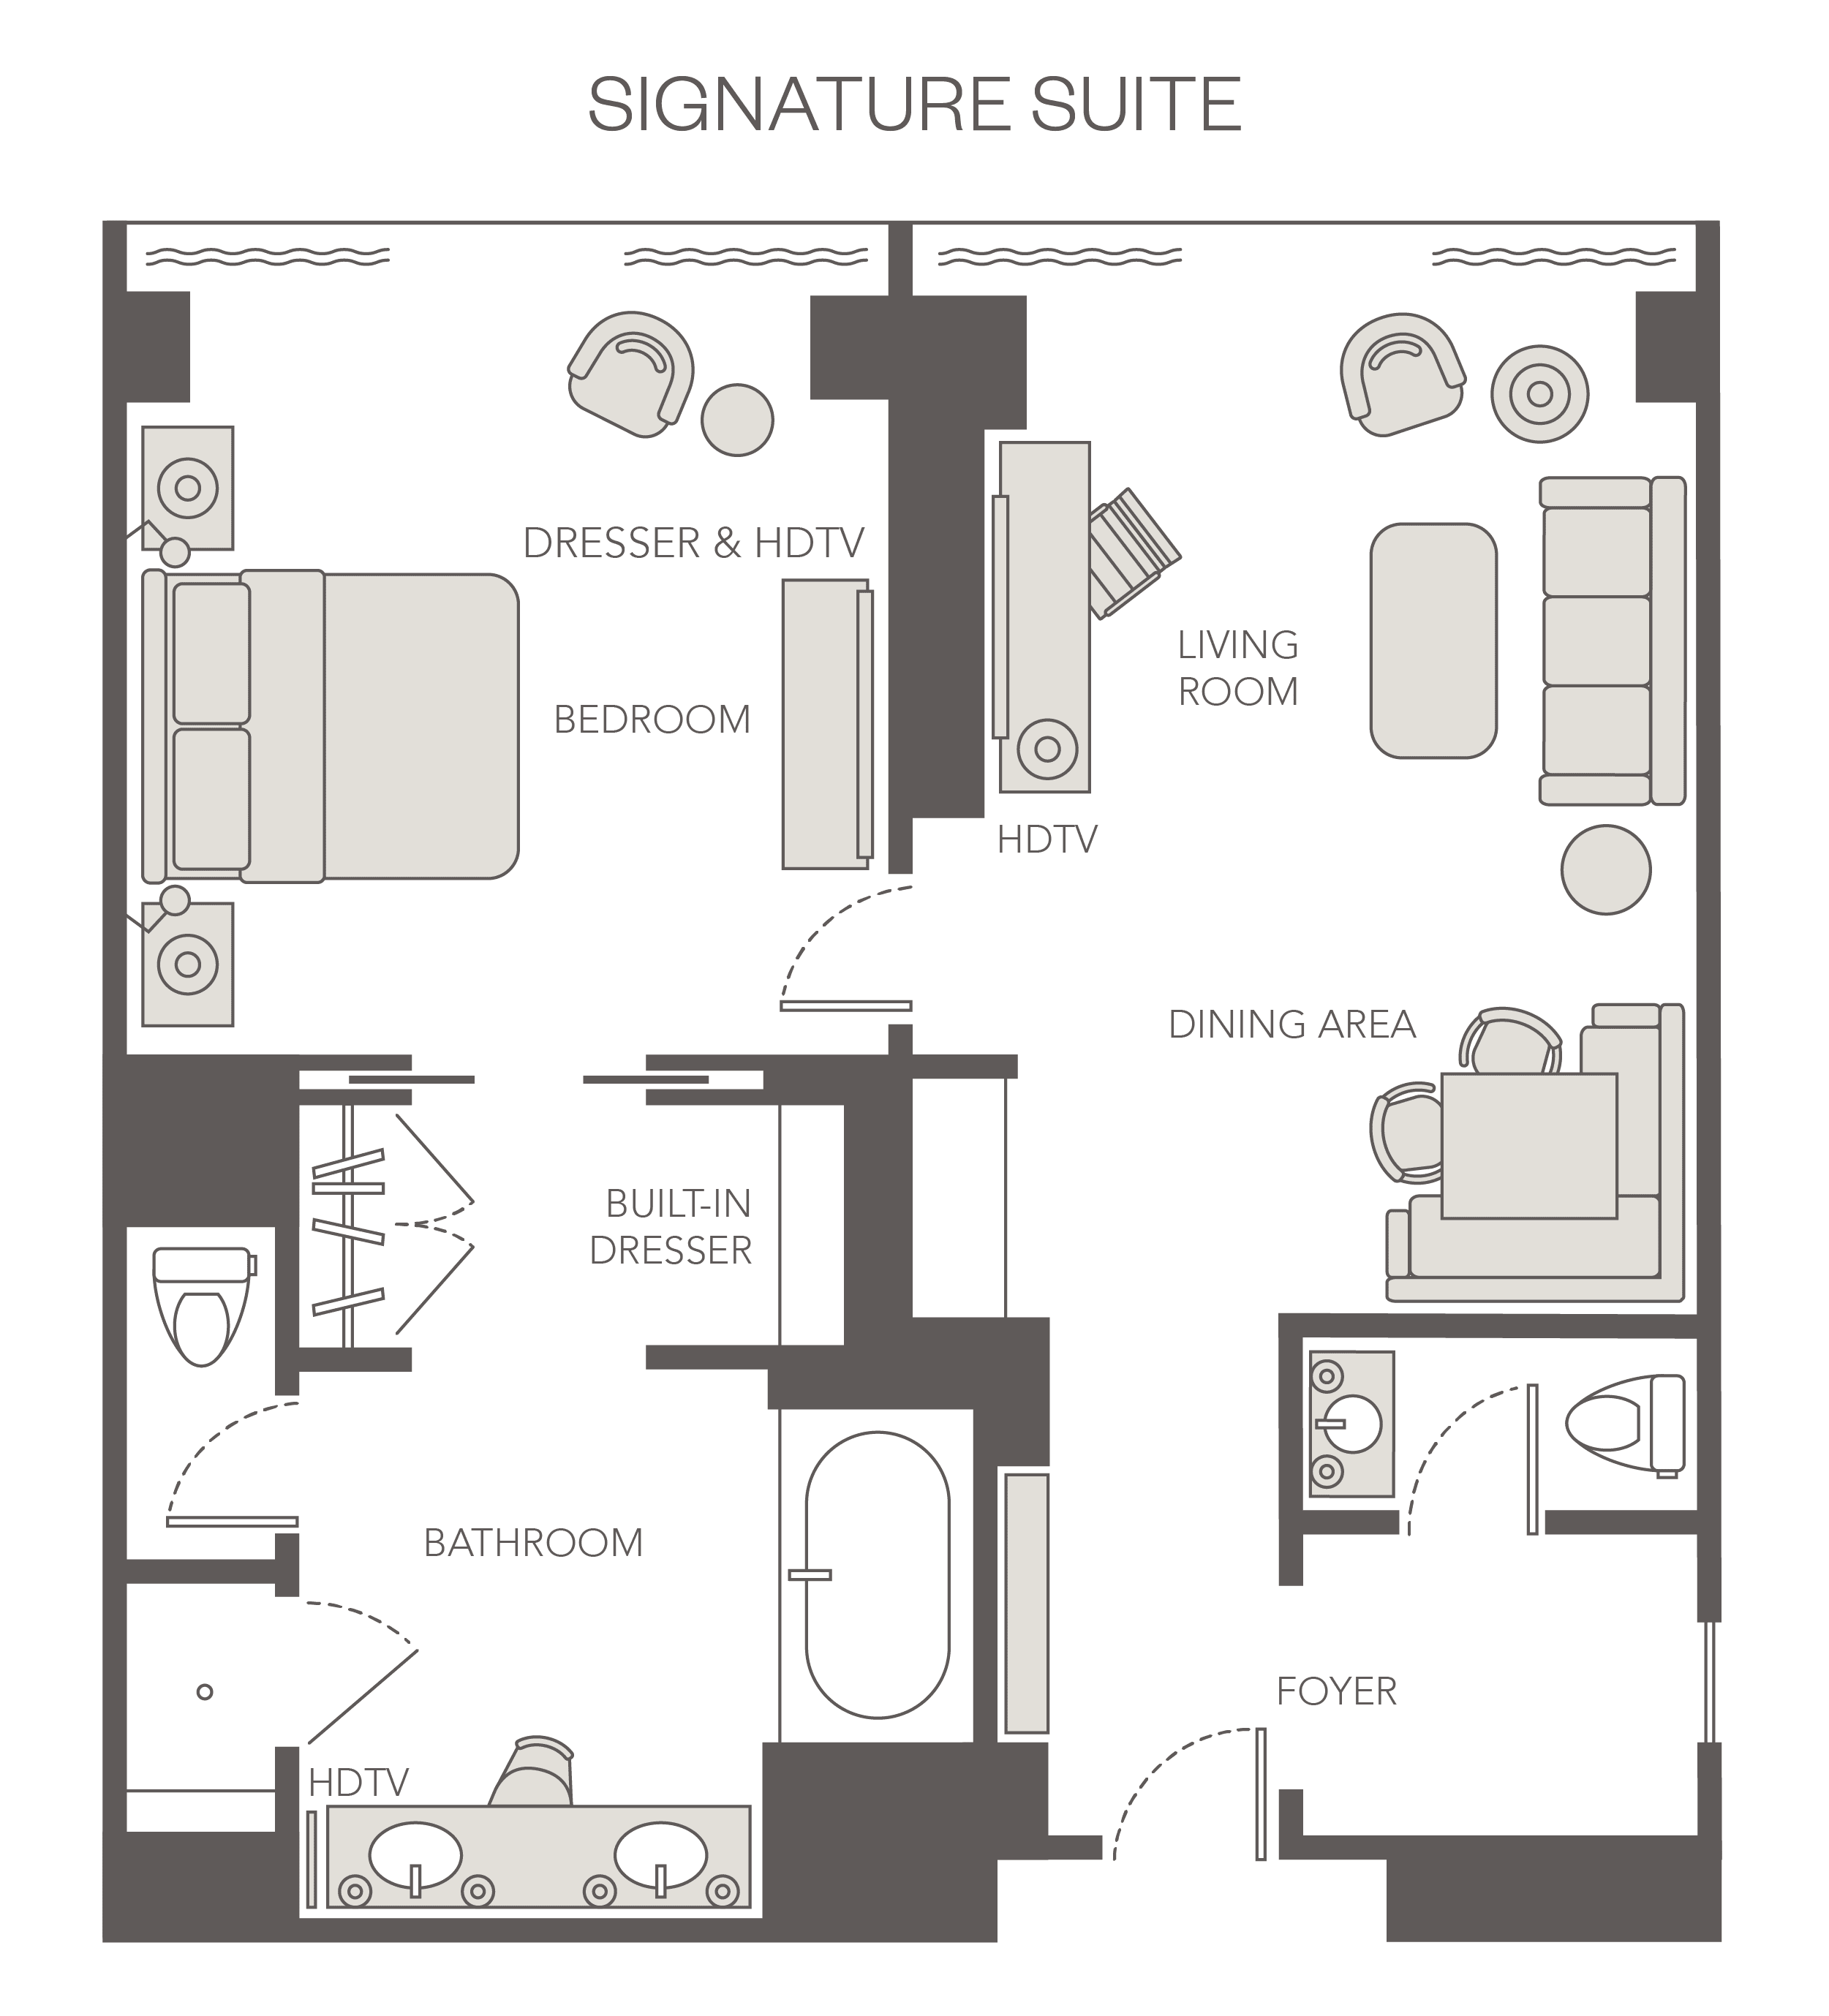 Signature Suite Floor Plan